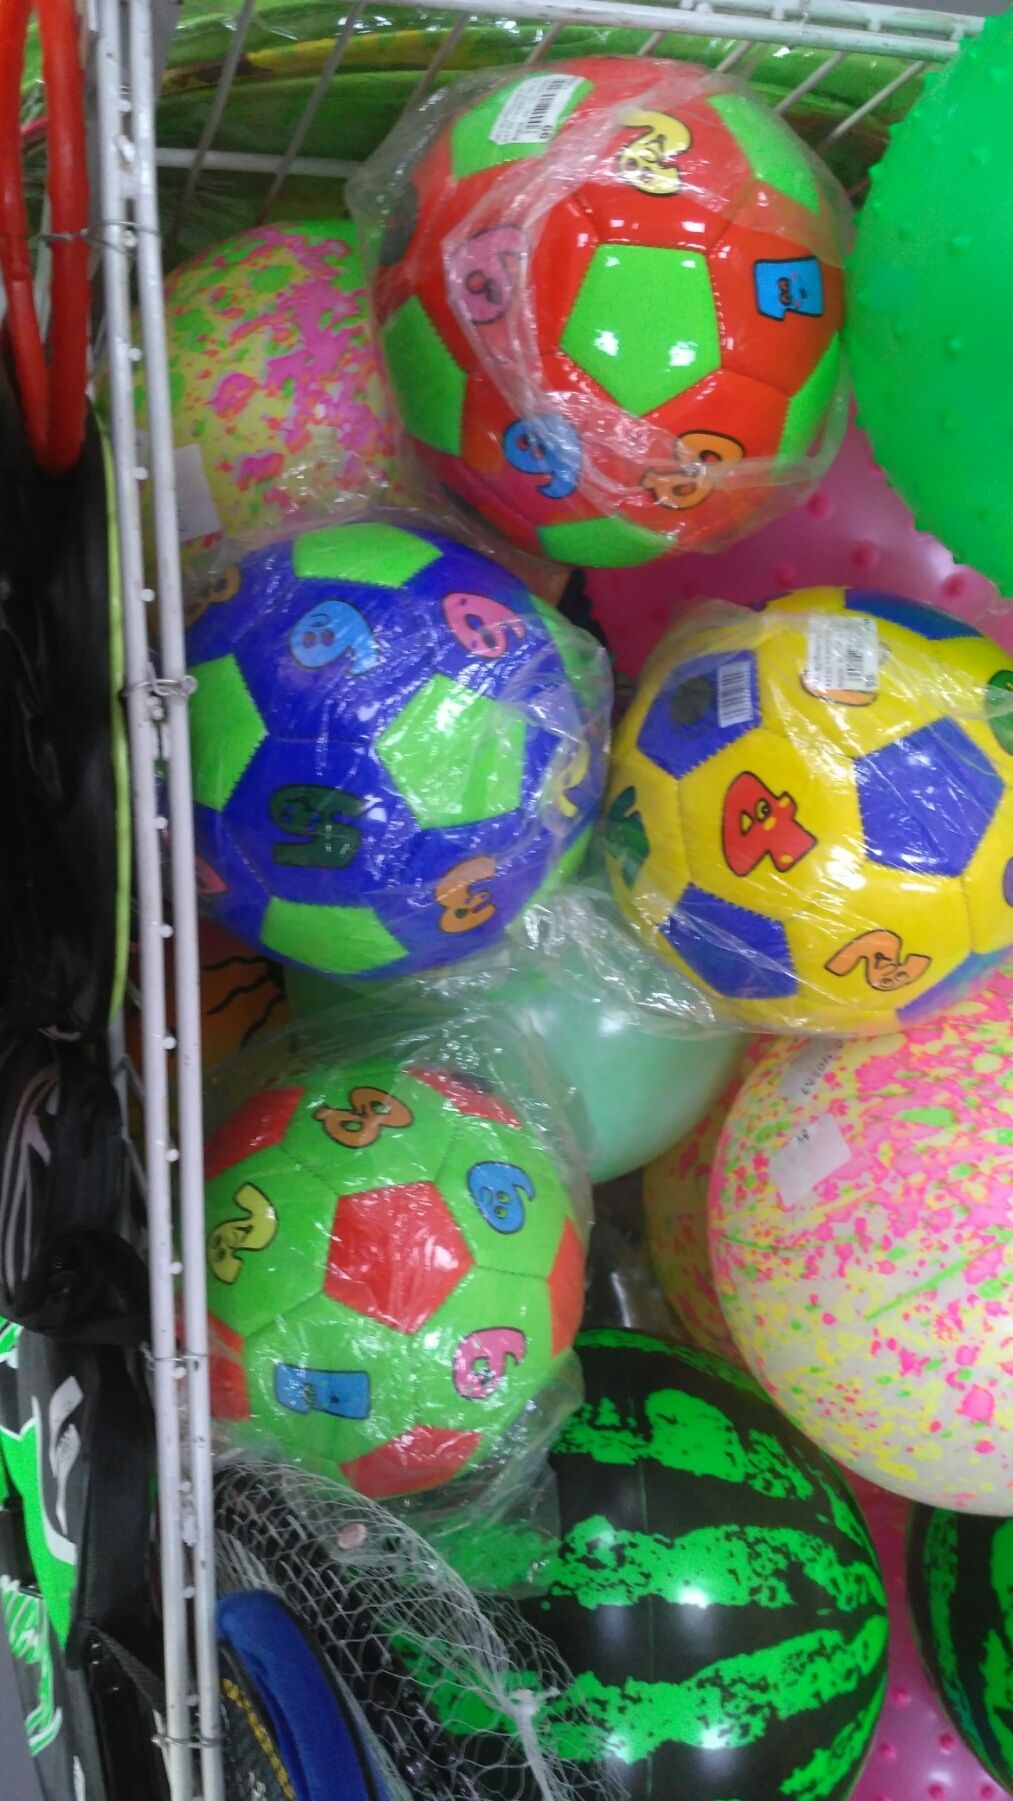 Мяч футбольный мини С 40083 материал PVC мячик мини детский мяч